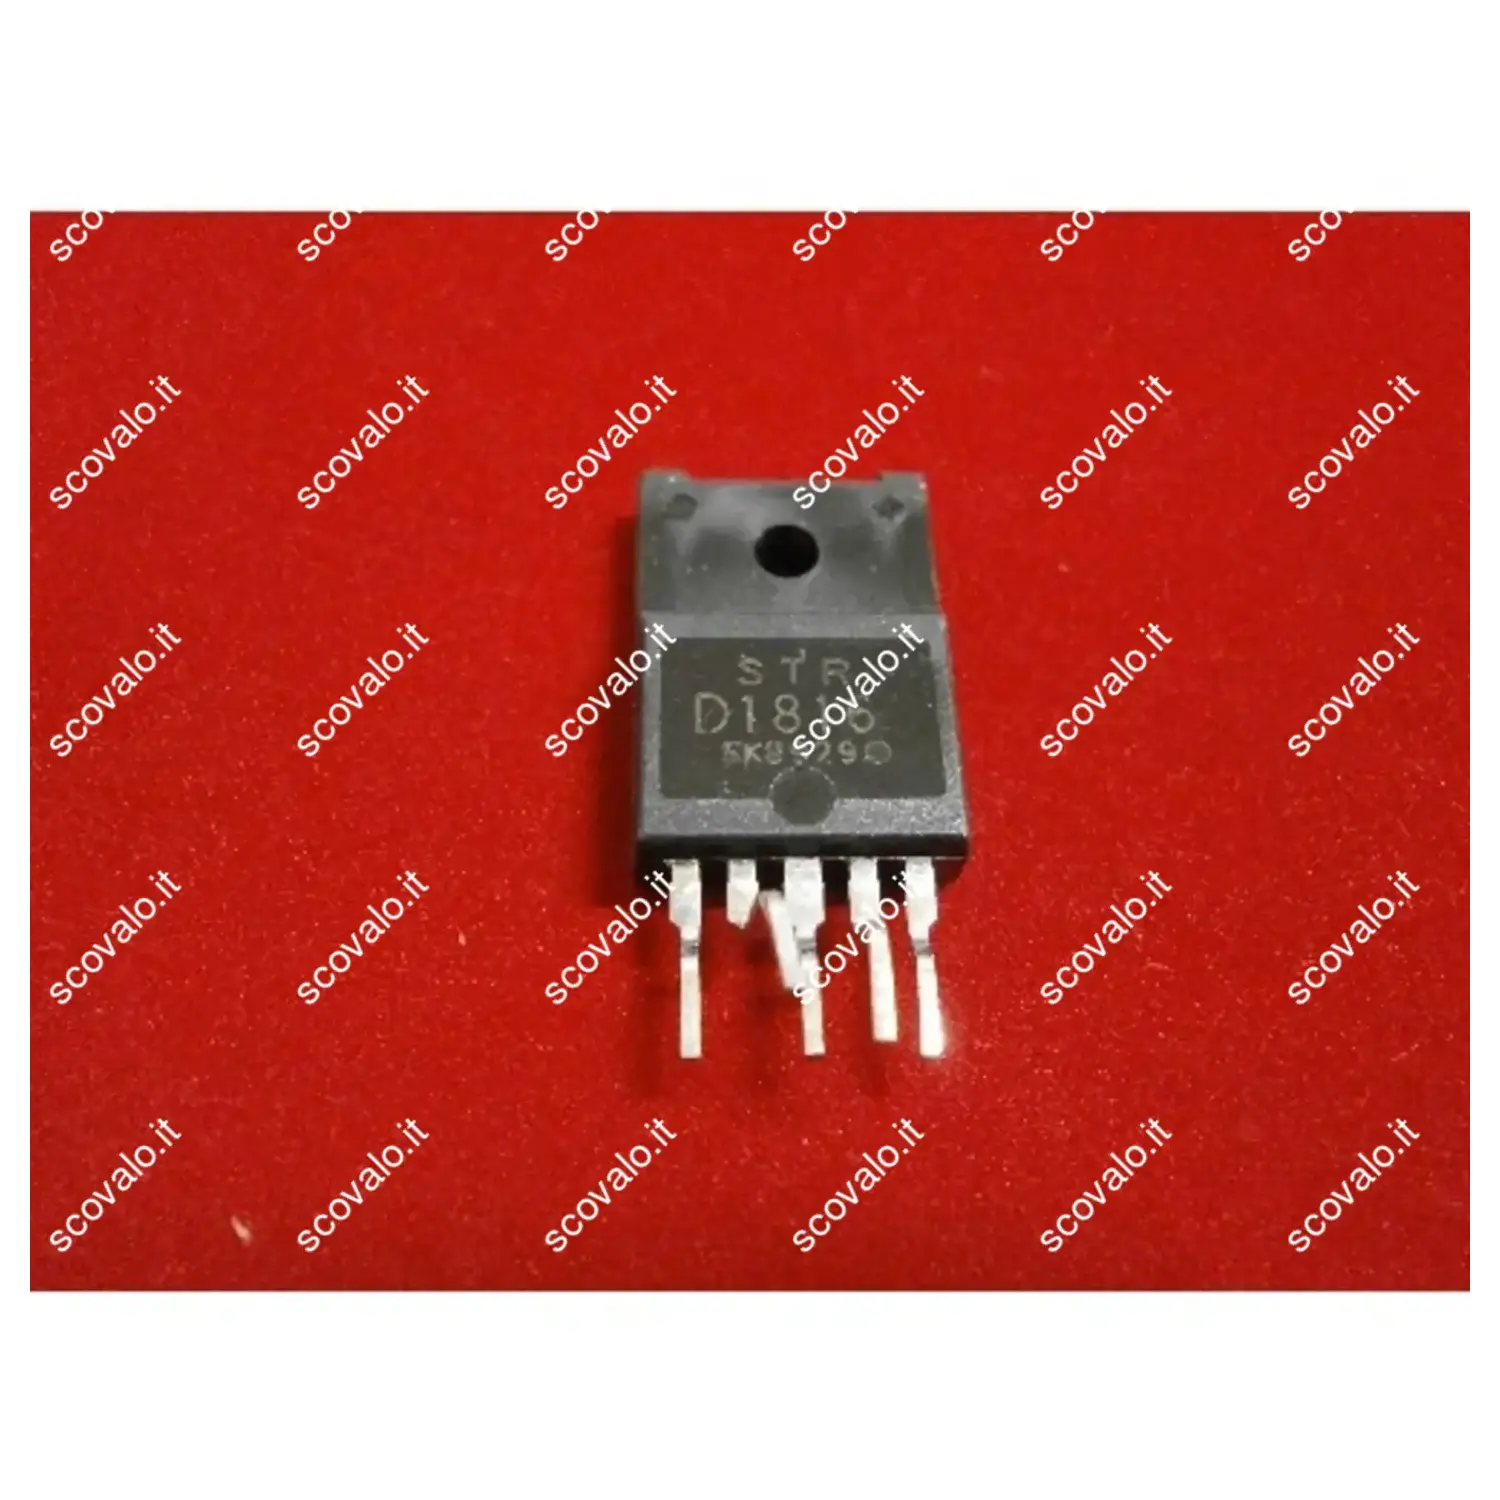 immagine del prodotto circuito integrato strd1816 numero di pin 5